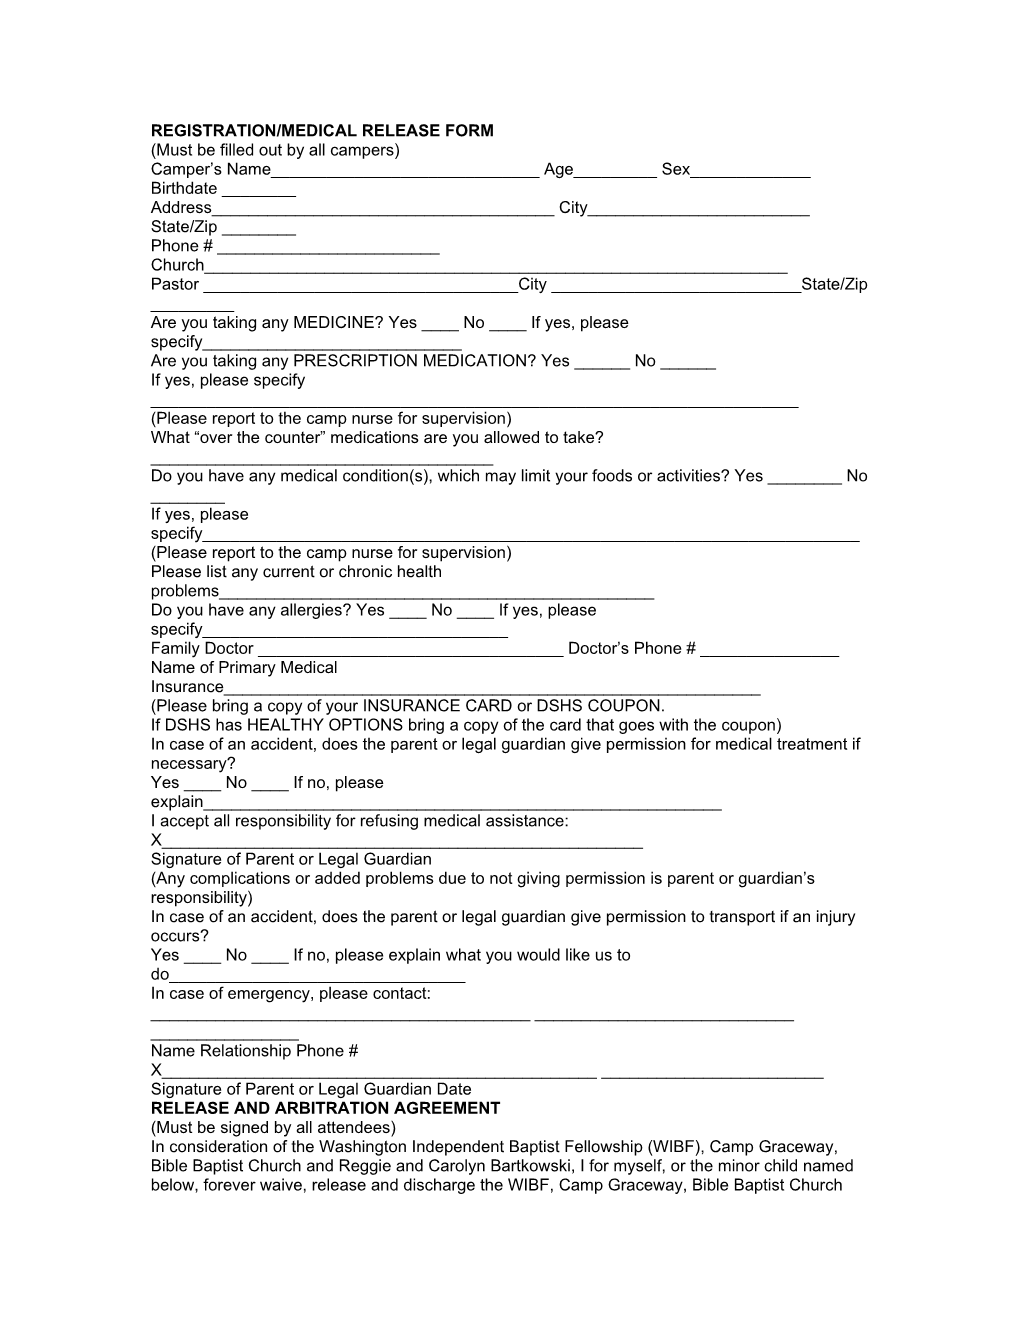 Registration/Medical Release Form